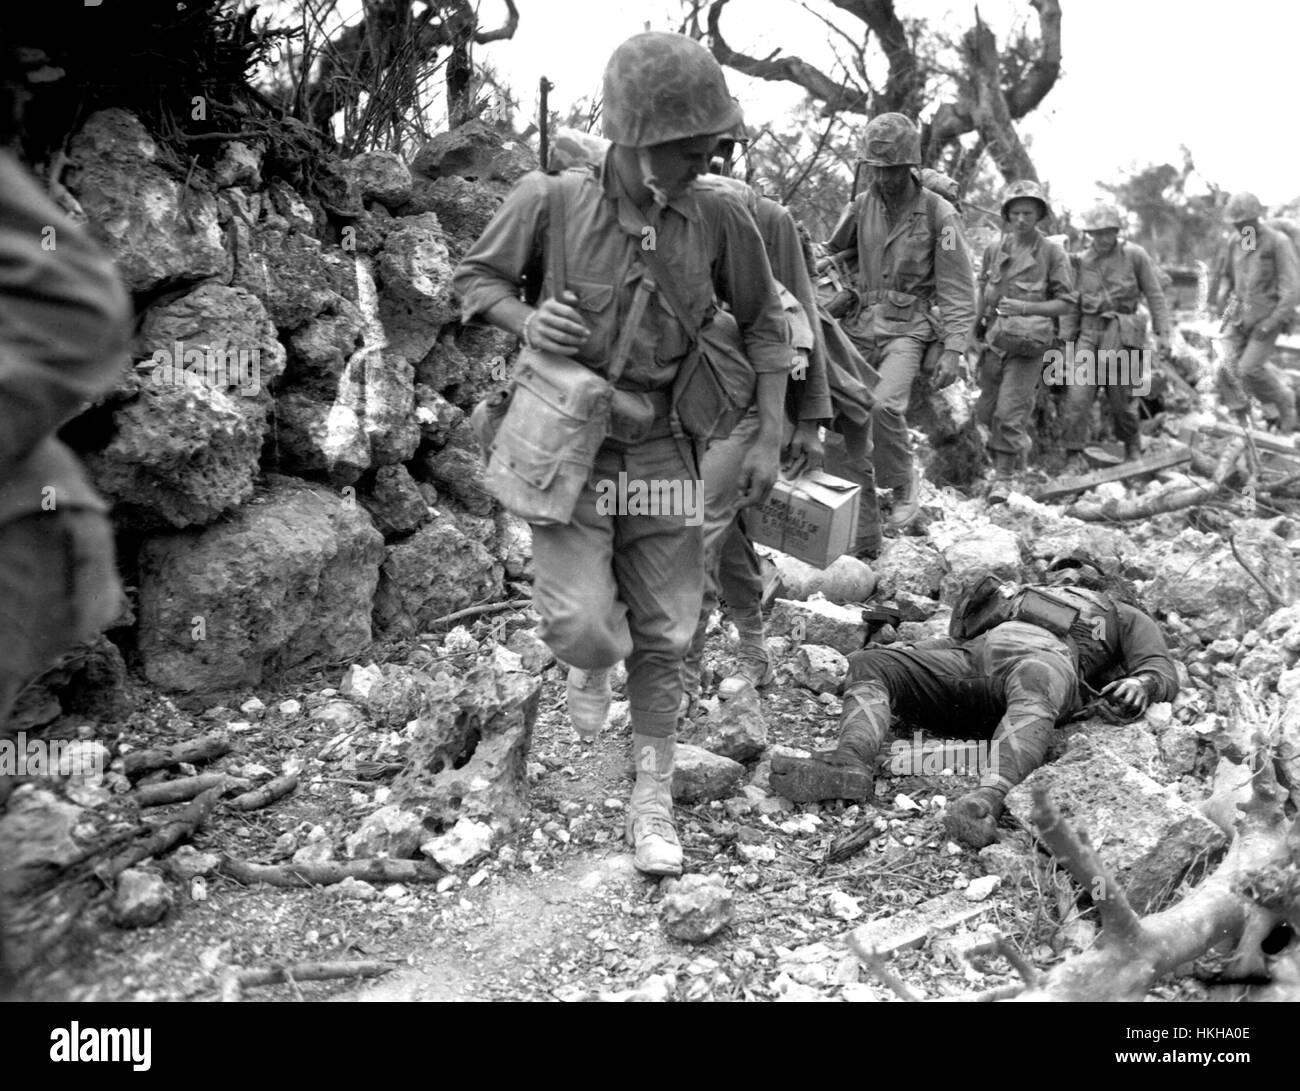 Schlacht von OKINAWA April-Juni 1945.   US-Marines pass eine tote Japaner, wie sie im April 1945 vorankommen. Foto: Norris G.McElroy/US Marines Stockfoto